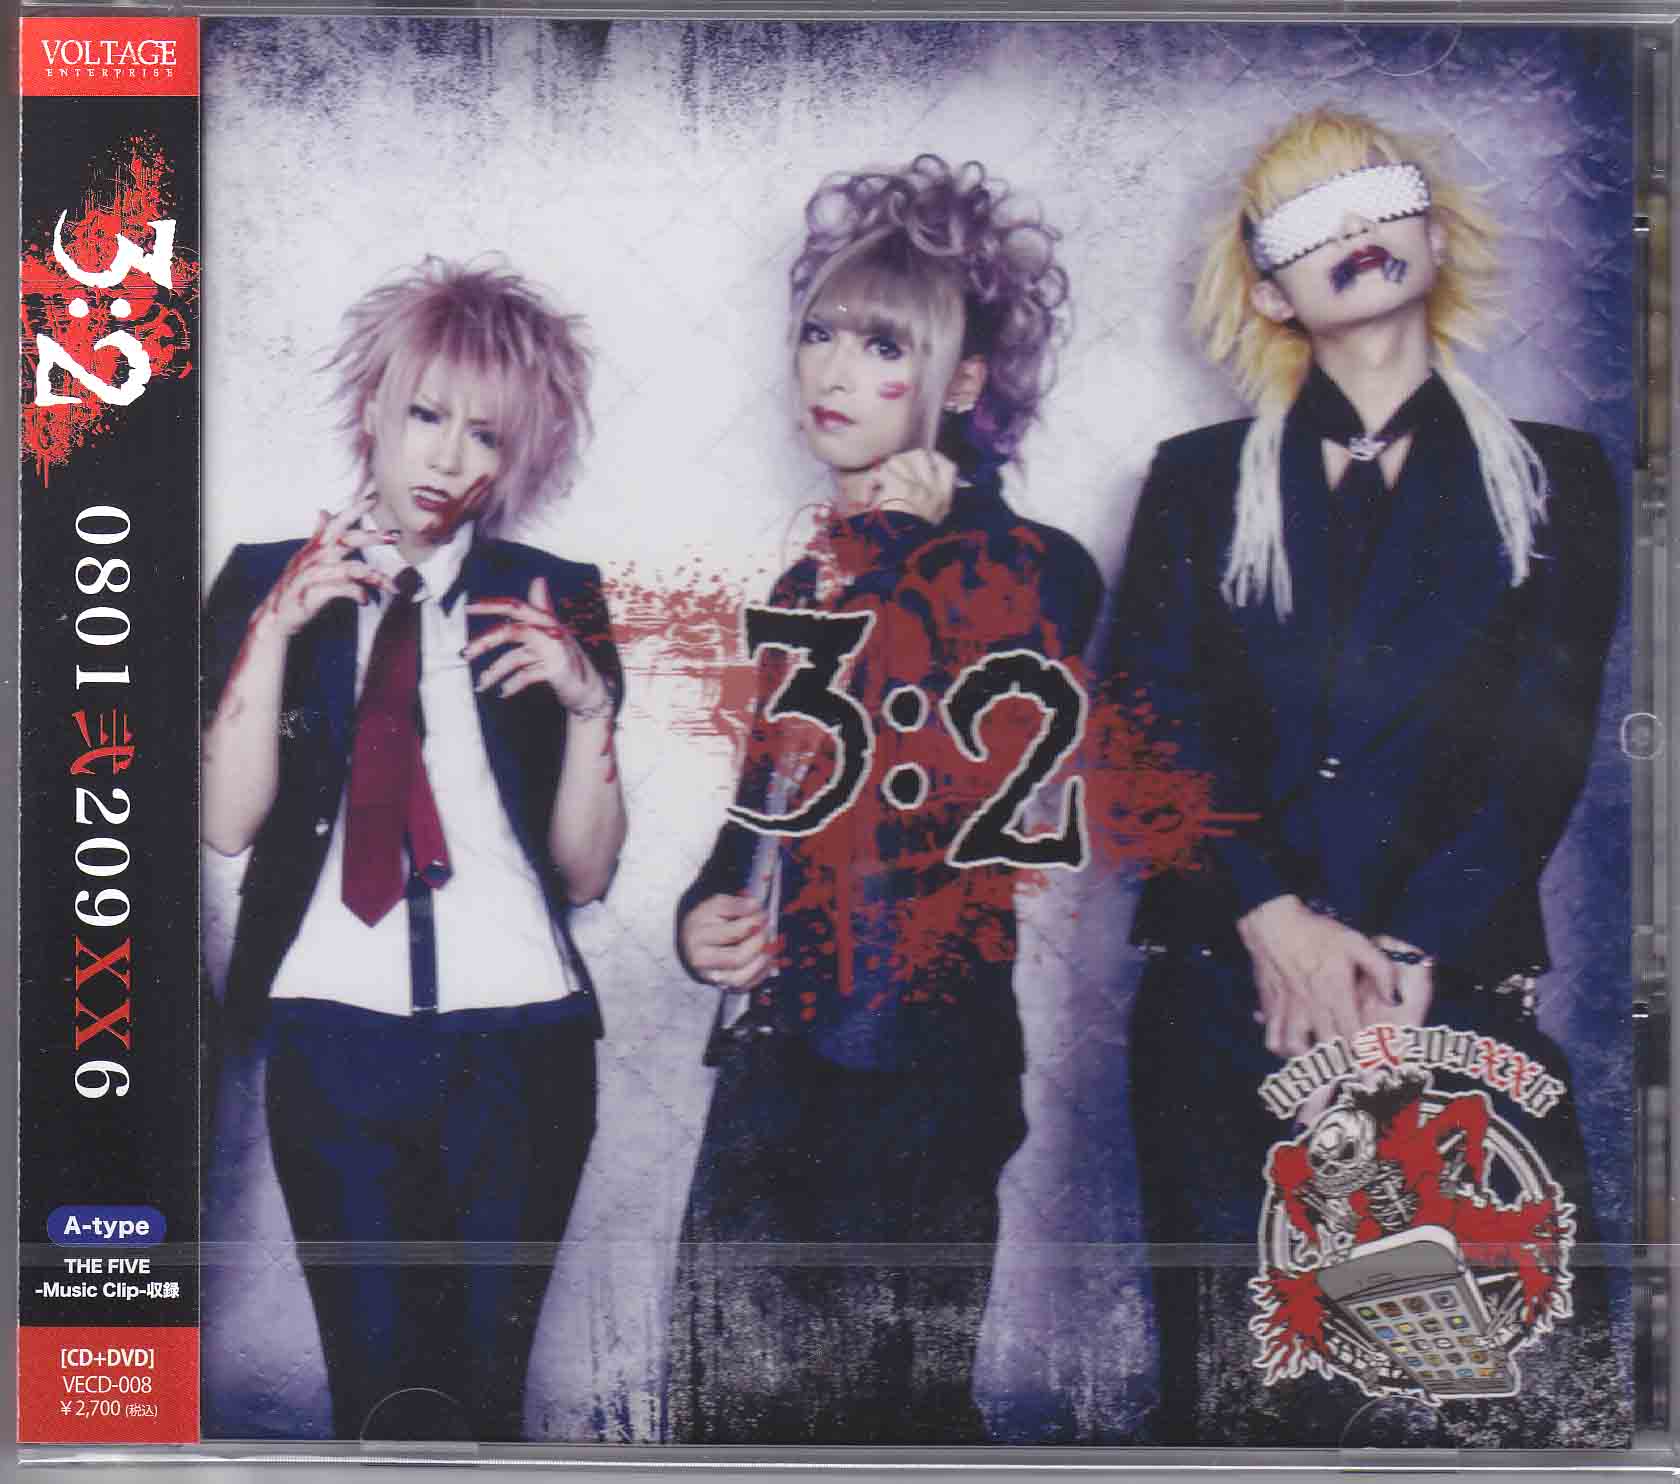 ゼロハチ の CD 3：2【A-type】